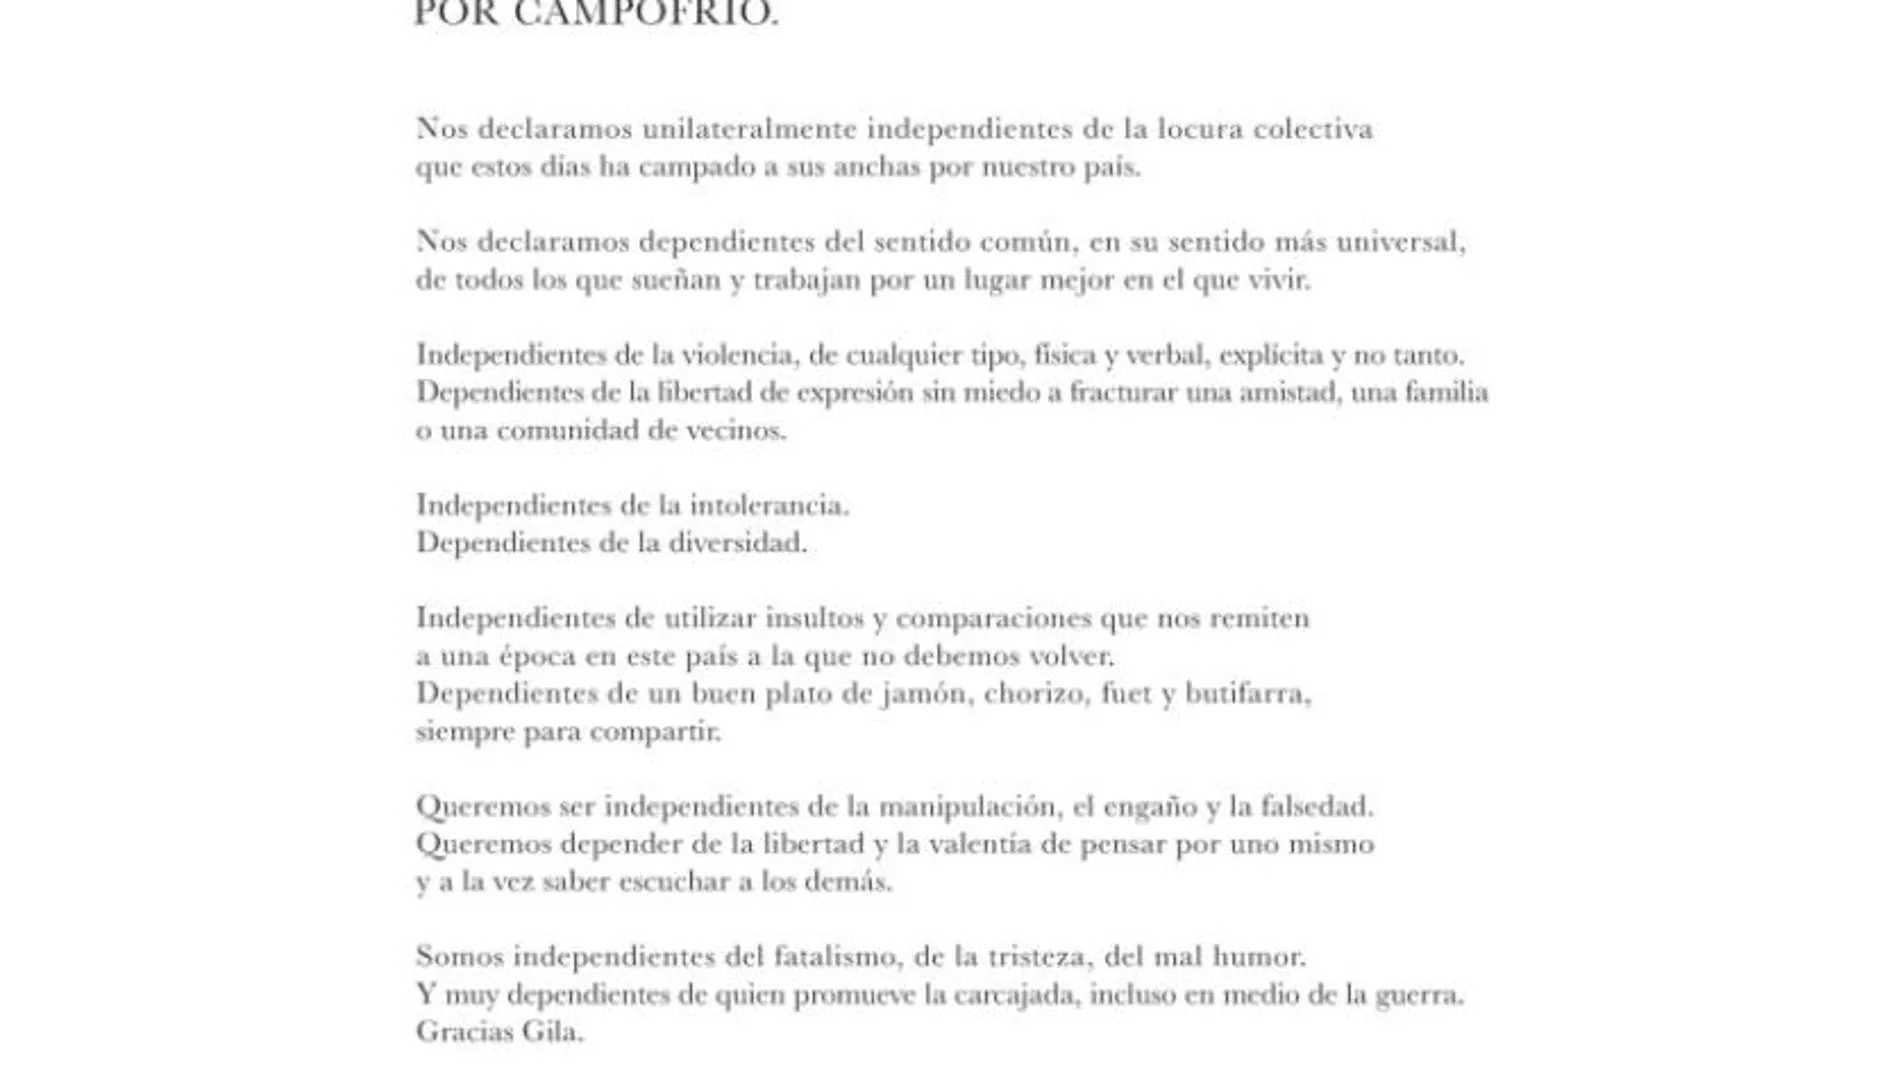 La «declaración unilateral de independencia y dependencia» de Campofrío